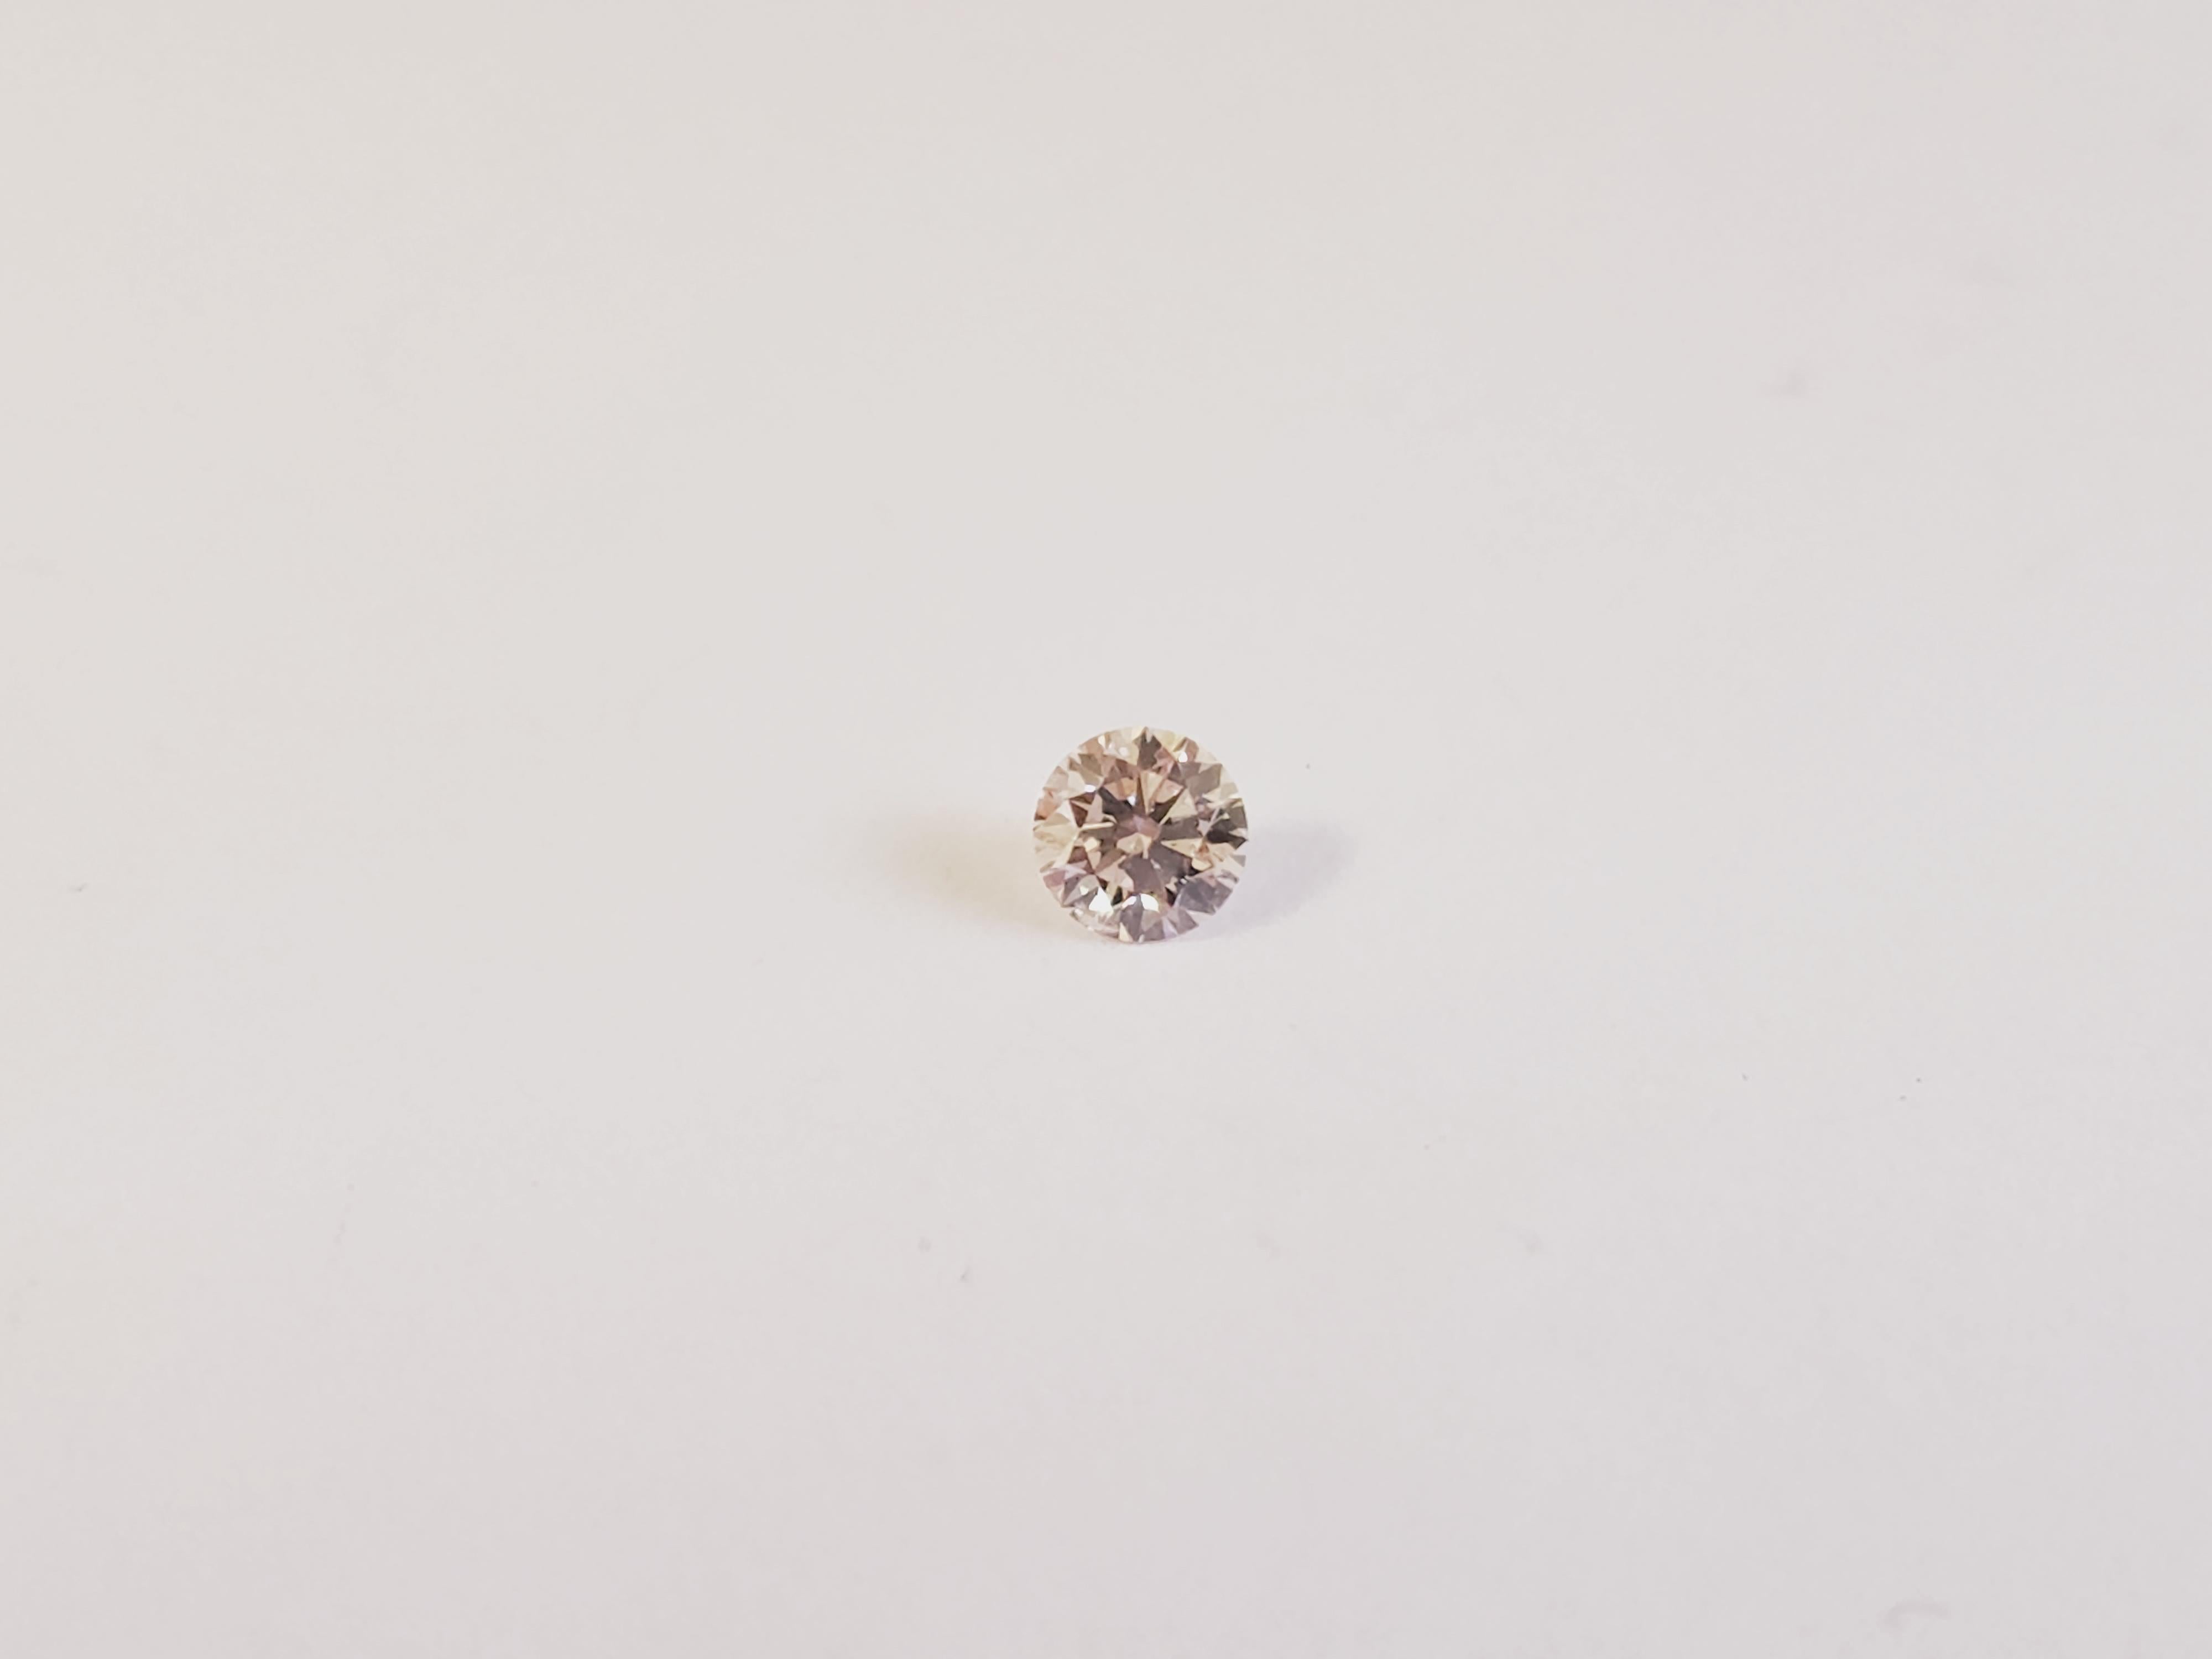 Argyle 0,12 Karat Natürlicher Rosa Champagner Runde Form Loser Diamant. Argyle mit Inschrift auf der Raute.

2020: Schließung des Bergwerks Argyle Am 3. November 2020 wird der Bergbau in Argyle nach 37 Jahren offiziell eingestellt.
Es ist eine